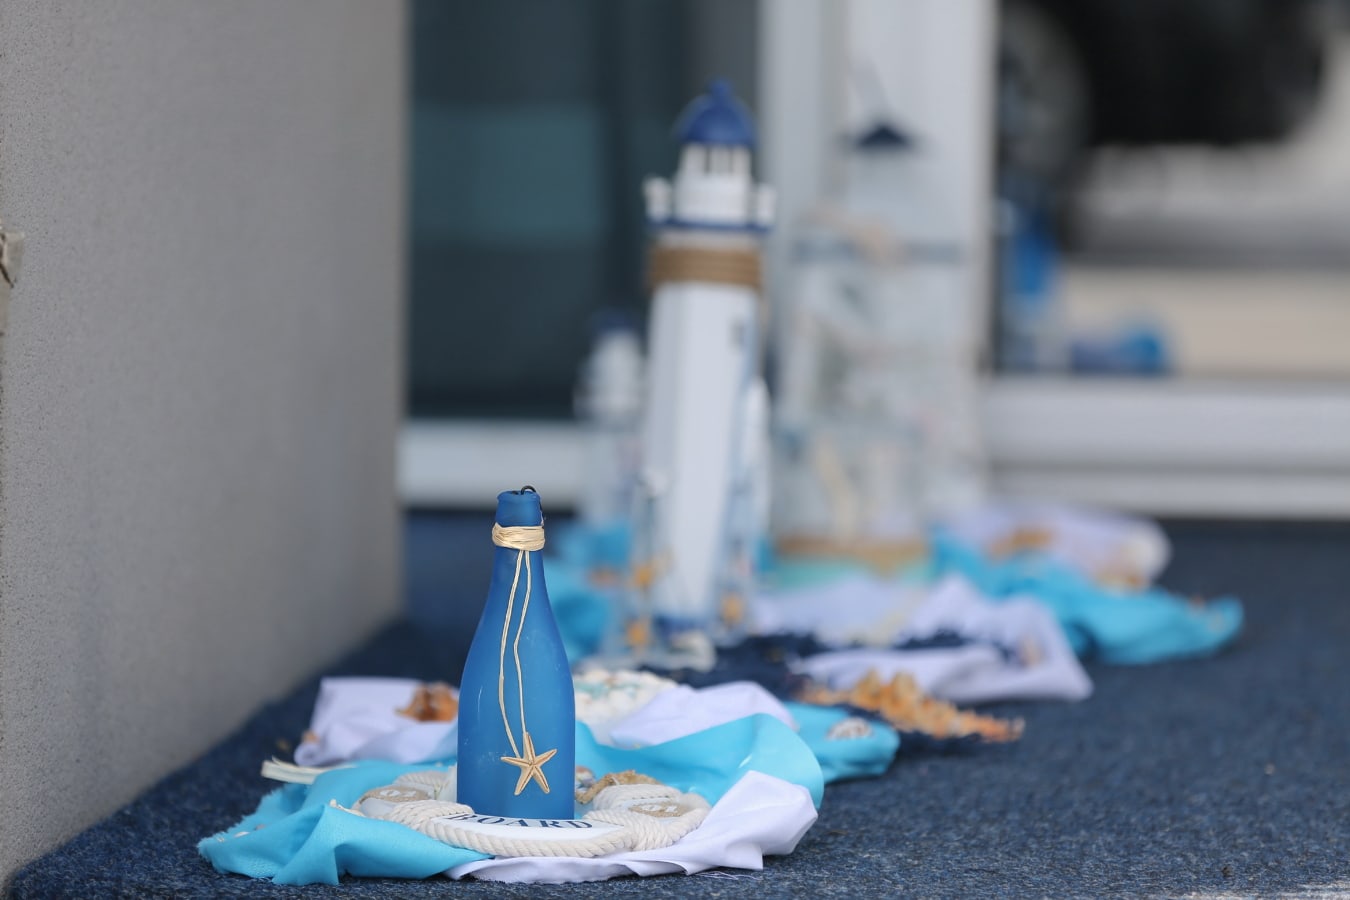 garrafa, azul, concha do mar, em miniatura, estrela do mar, decoração, farol, ainda vida, dentro de casa, tabela